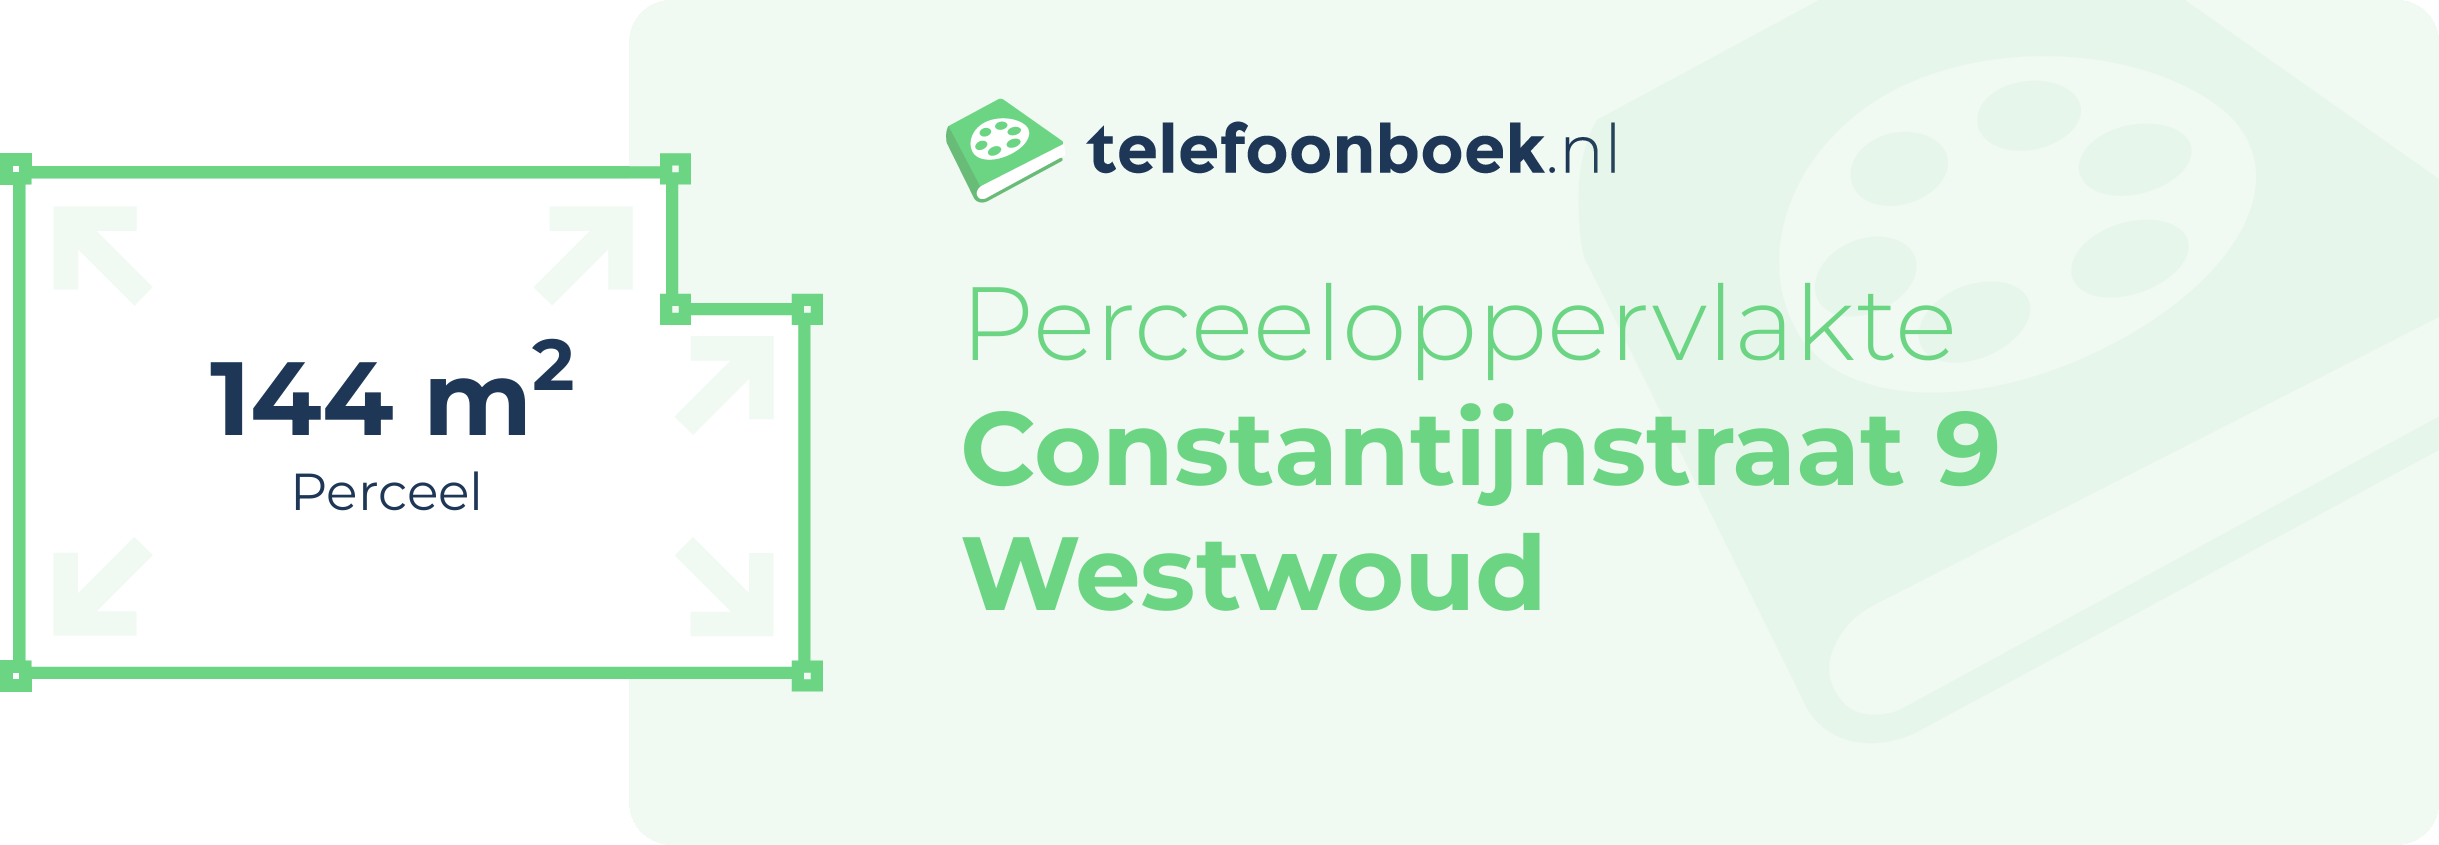 Perceeloppervlakte Constantijnstraat 9 Westwoud